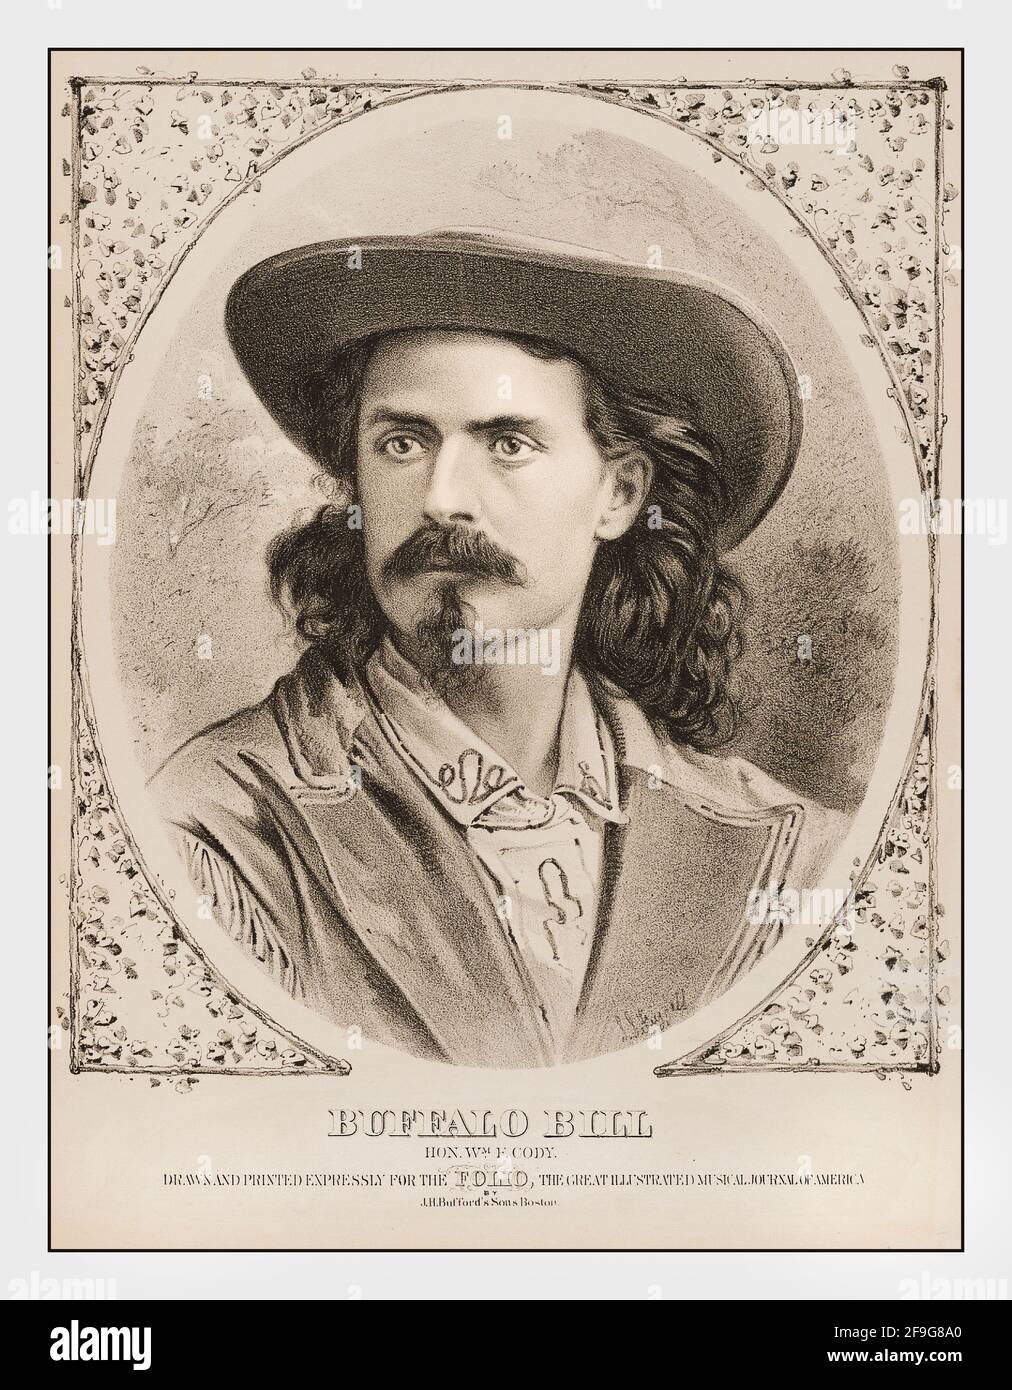 BUFFALO BILL Vintage 1860 Radierungsposter von Buffalo Bill William Frederick Cody. Bekannt als Buffalo Bill, ein amerikanischer Frontsmann und Showman Stockfoto